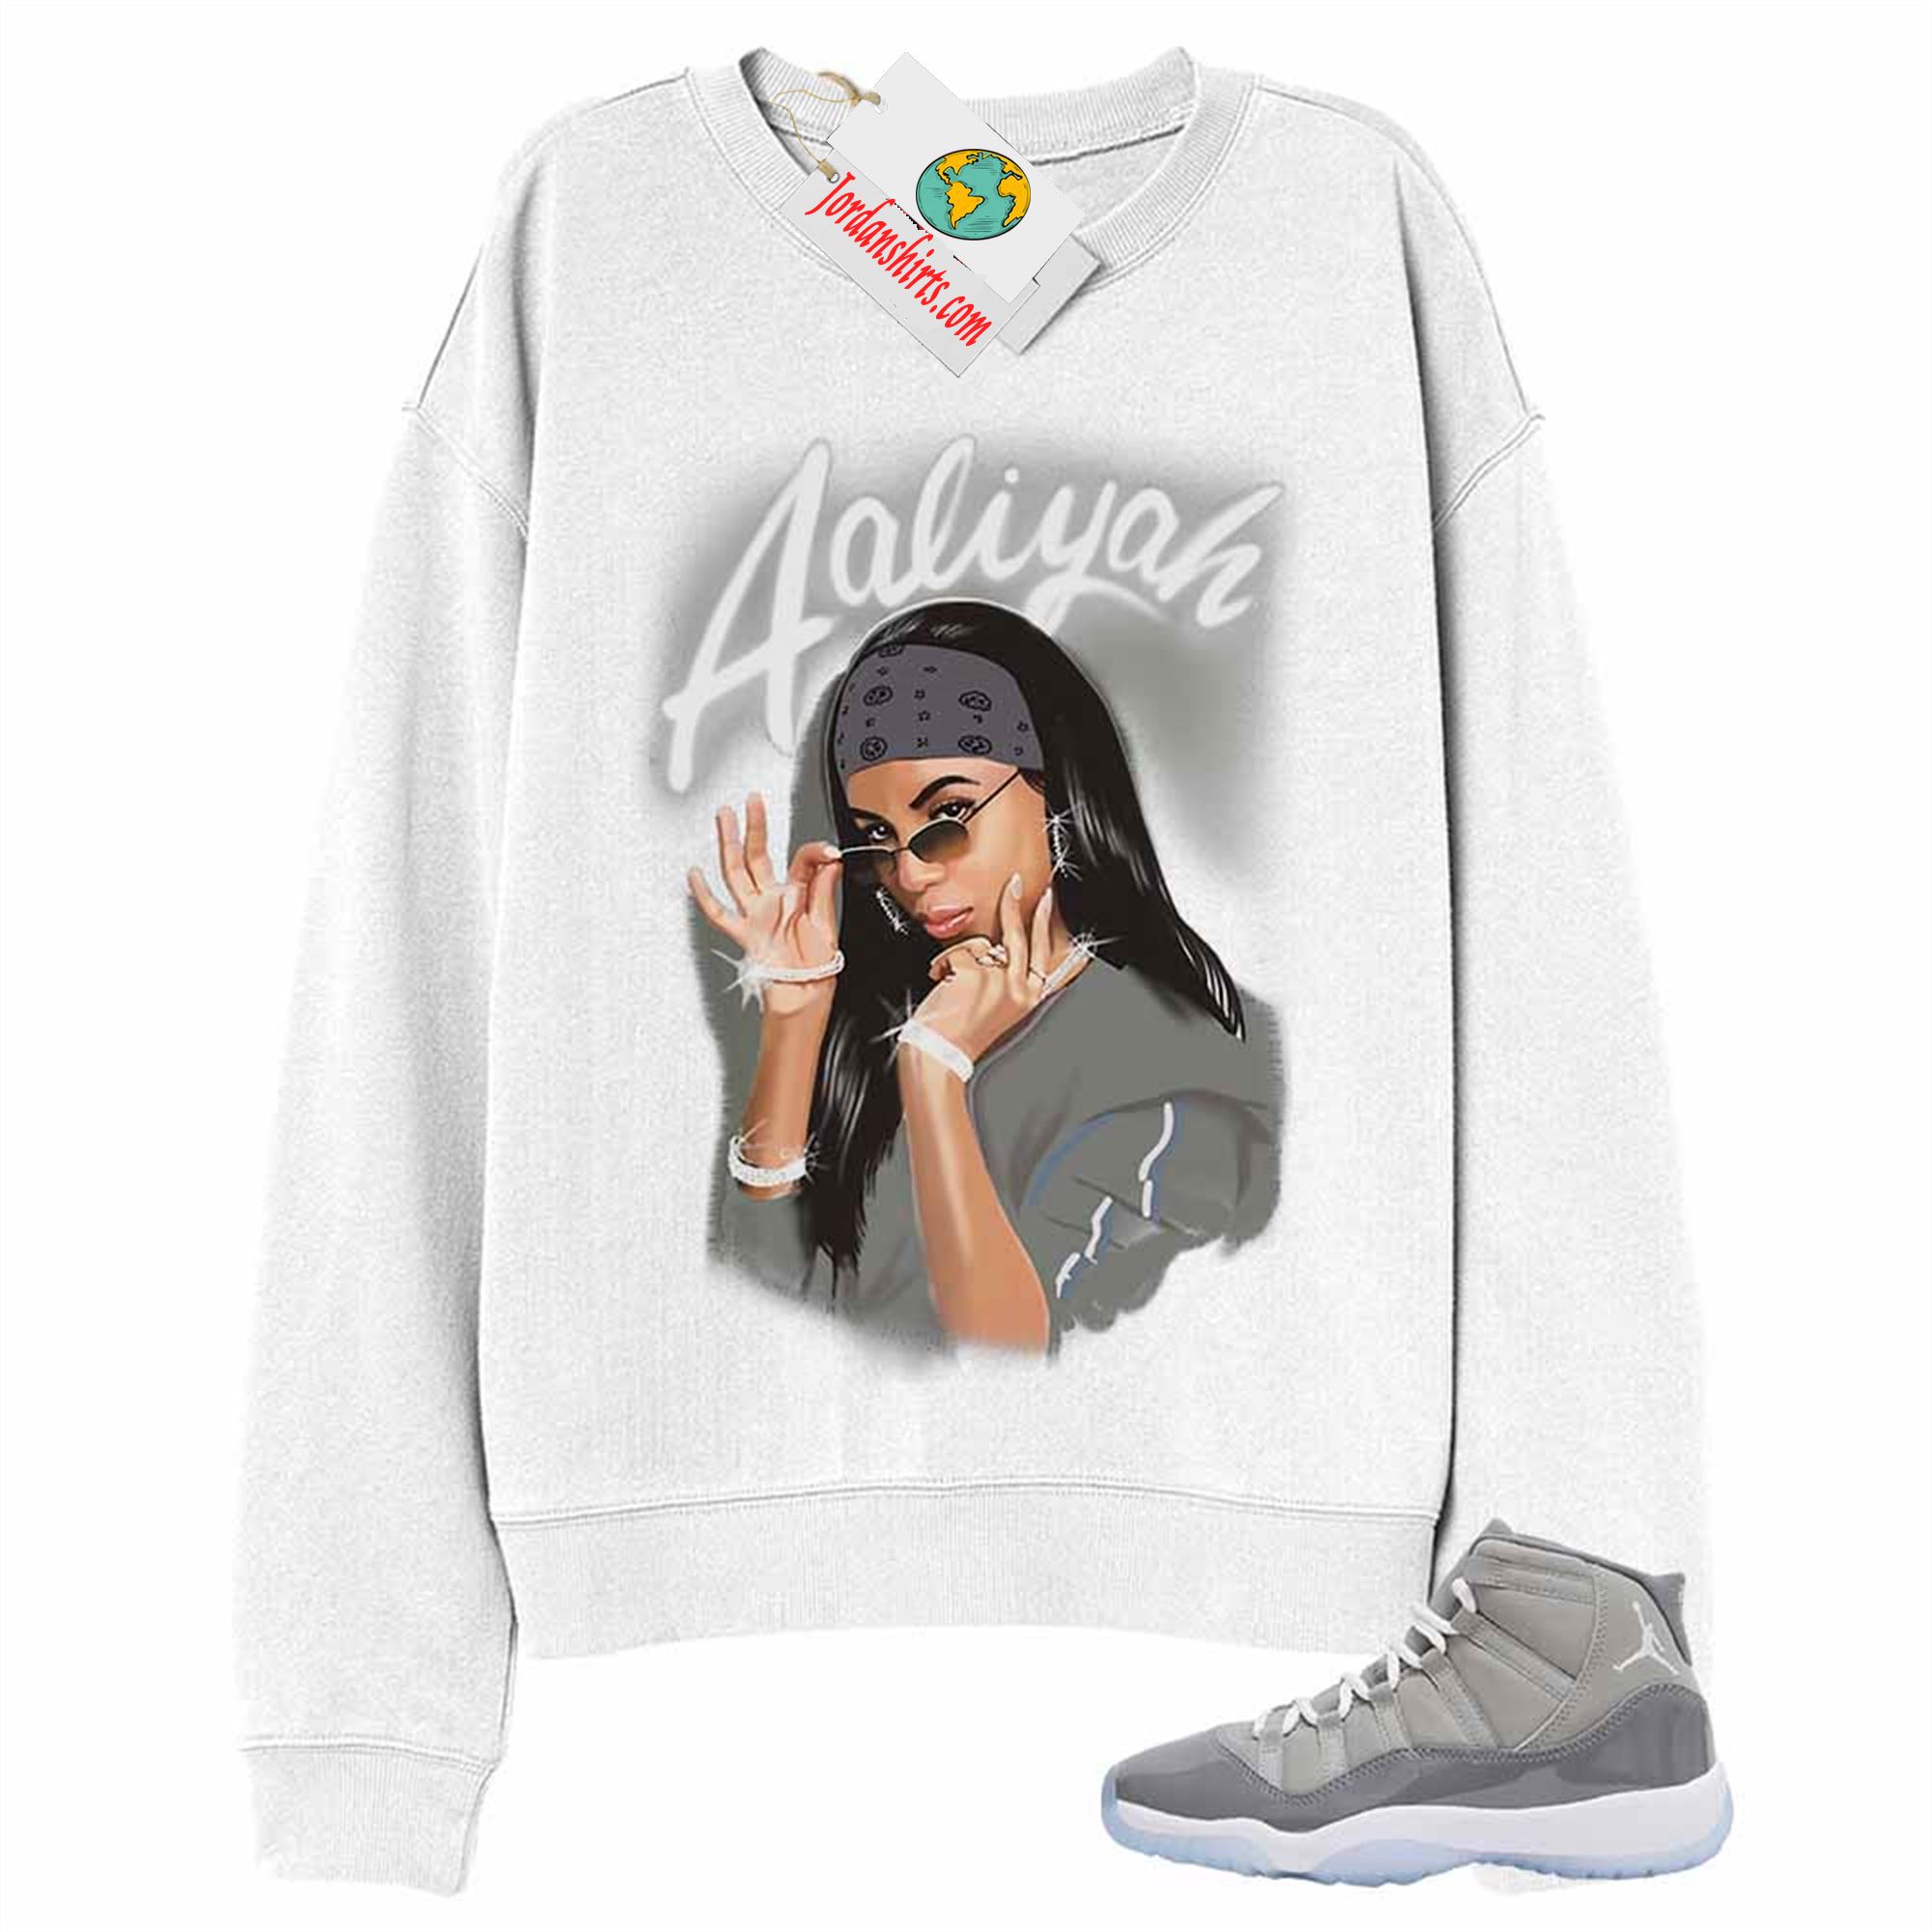 Jordan 11 Sweatshirt, Aaliyah Airbrush White Sweatshirt Air Jordan 11 Cool Grey 11s Full Size Up To 5xl